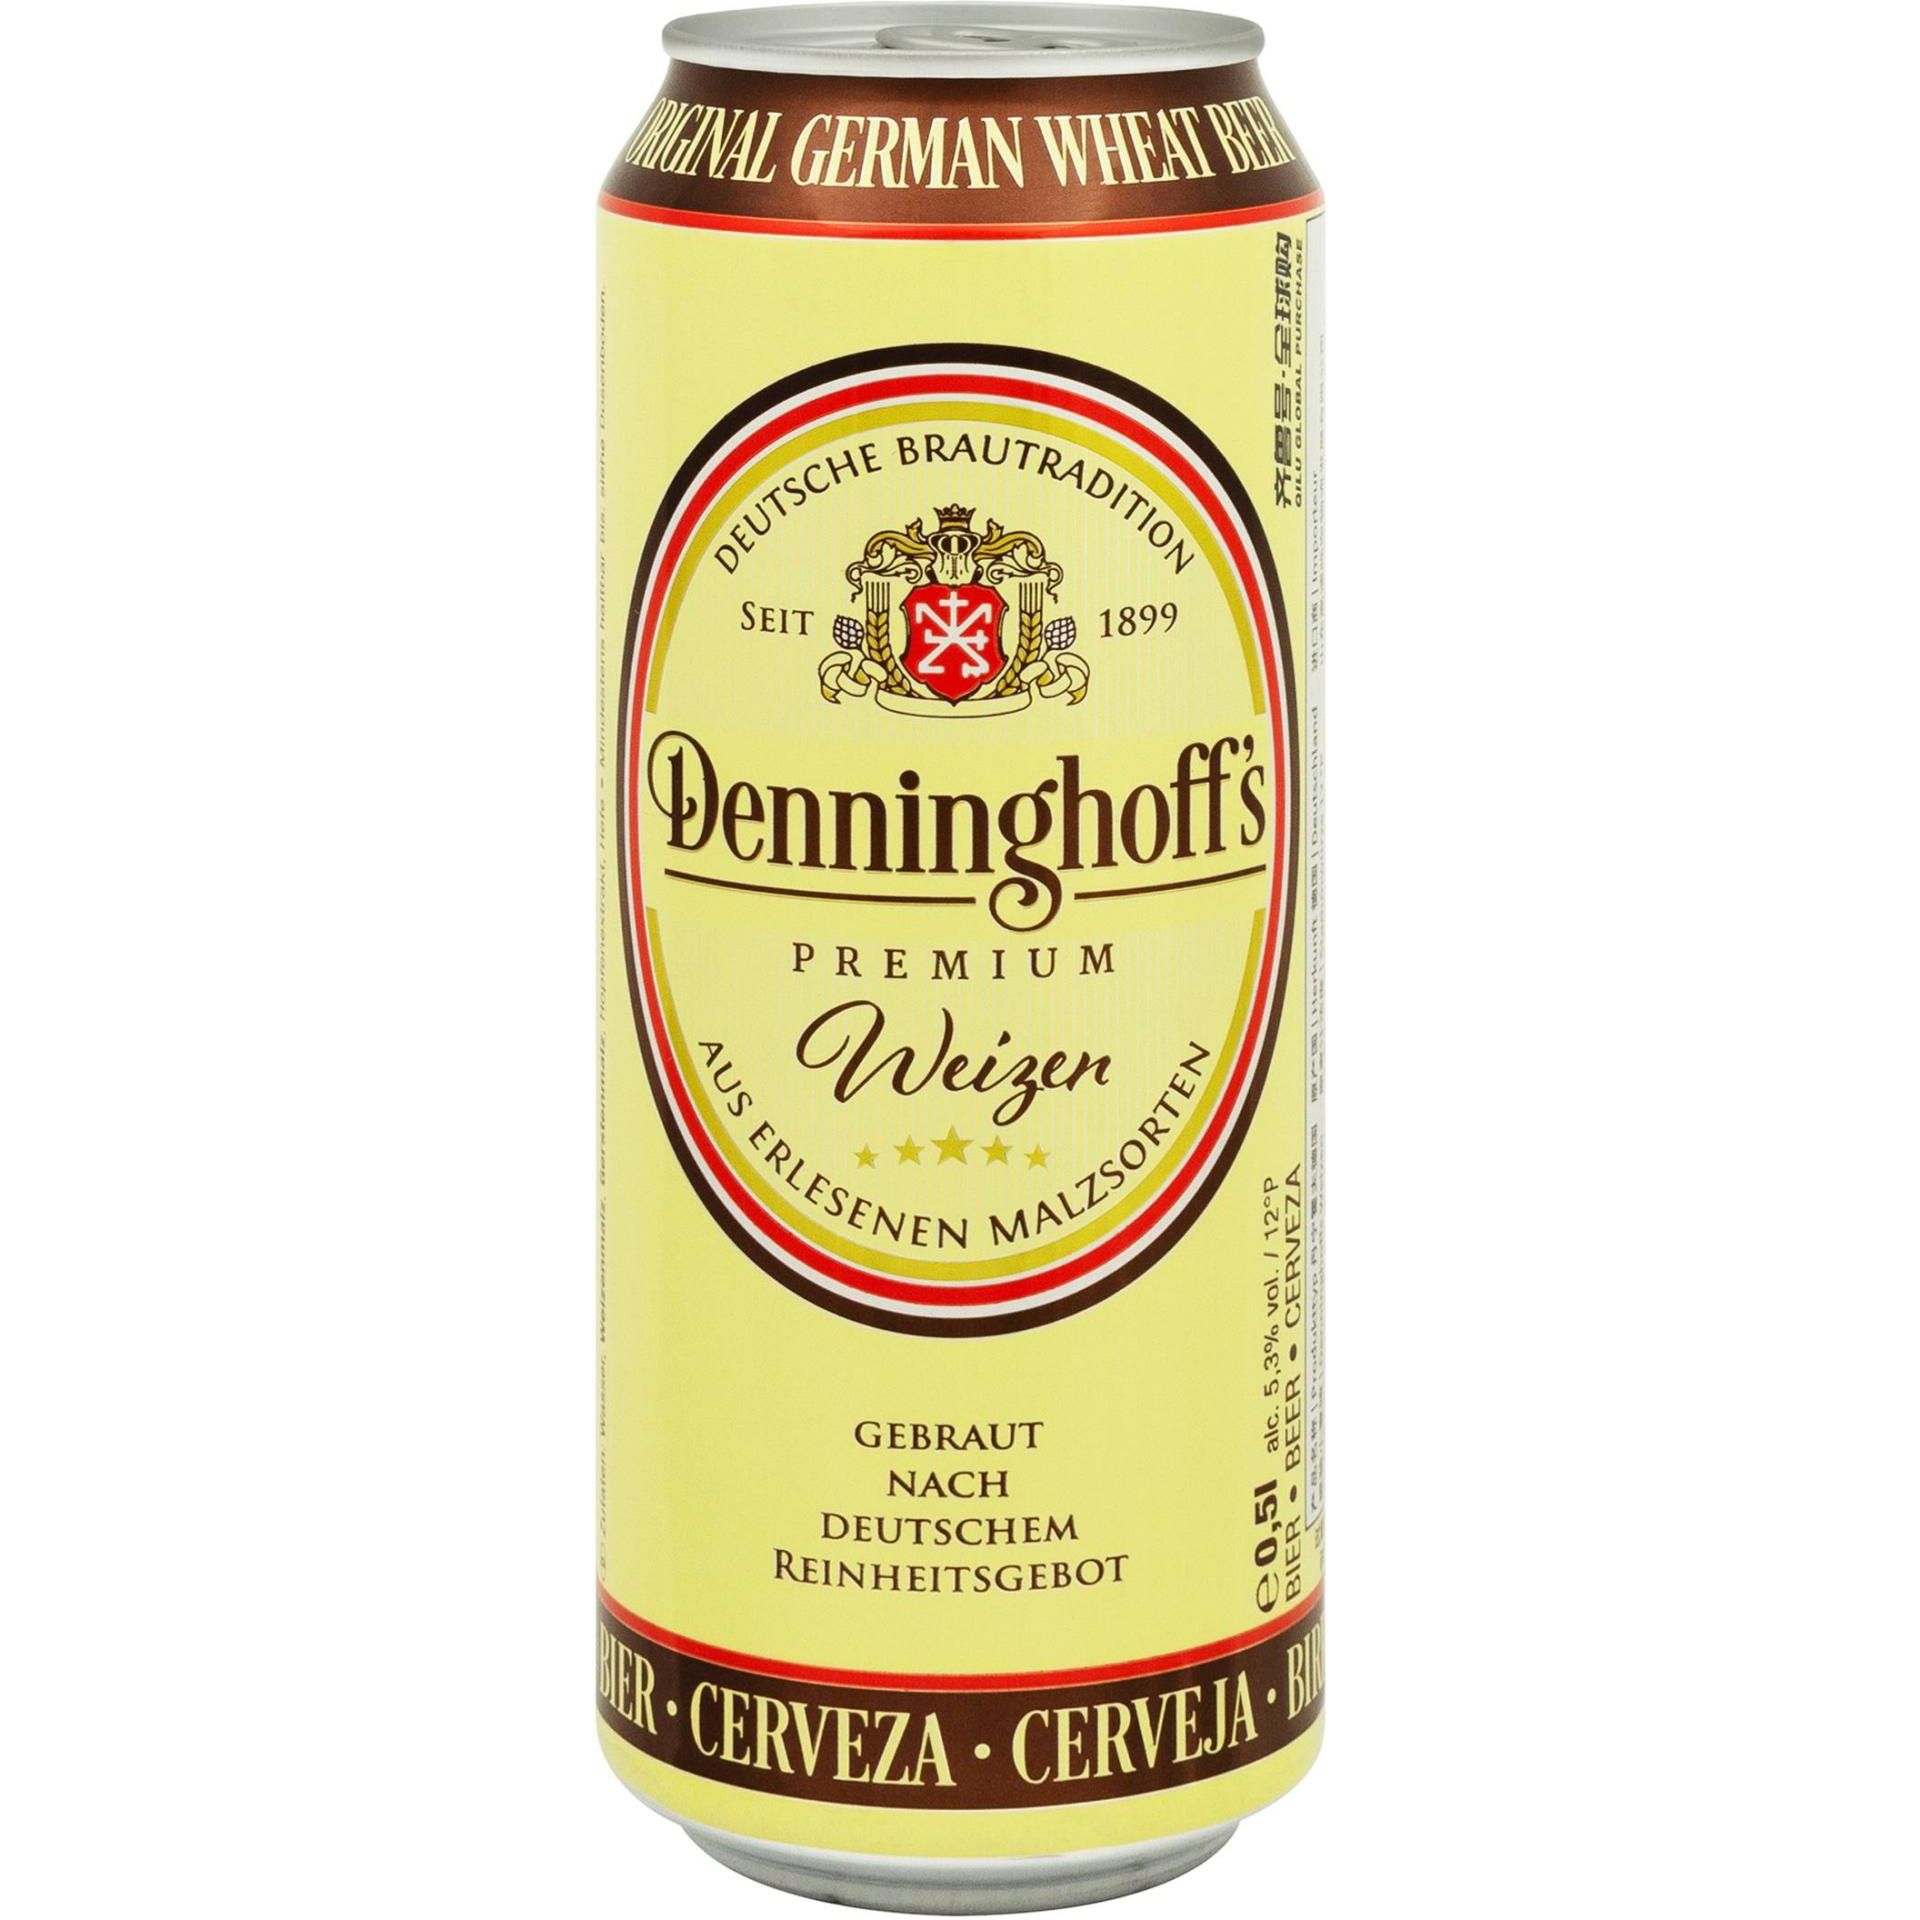 Пиво Denninghoff's Weizen пшеничное нефильтрованное 5.3% 0.5 л ж/б - фото 1